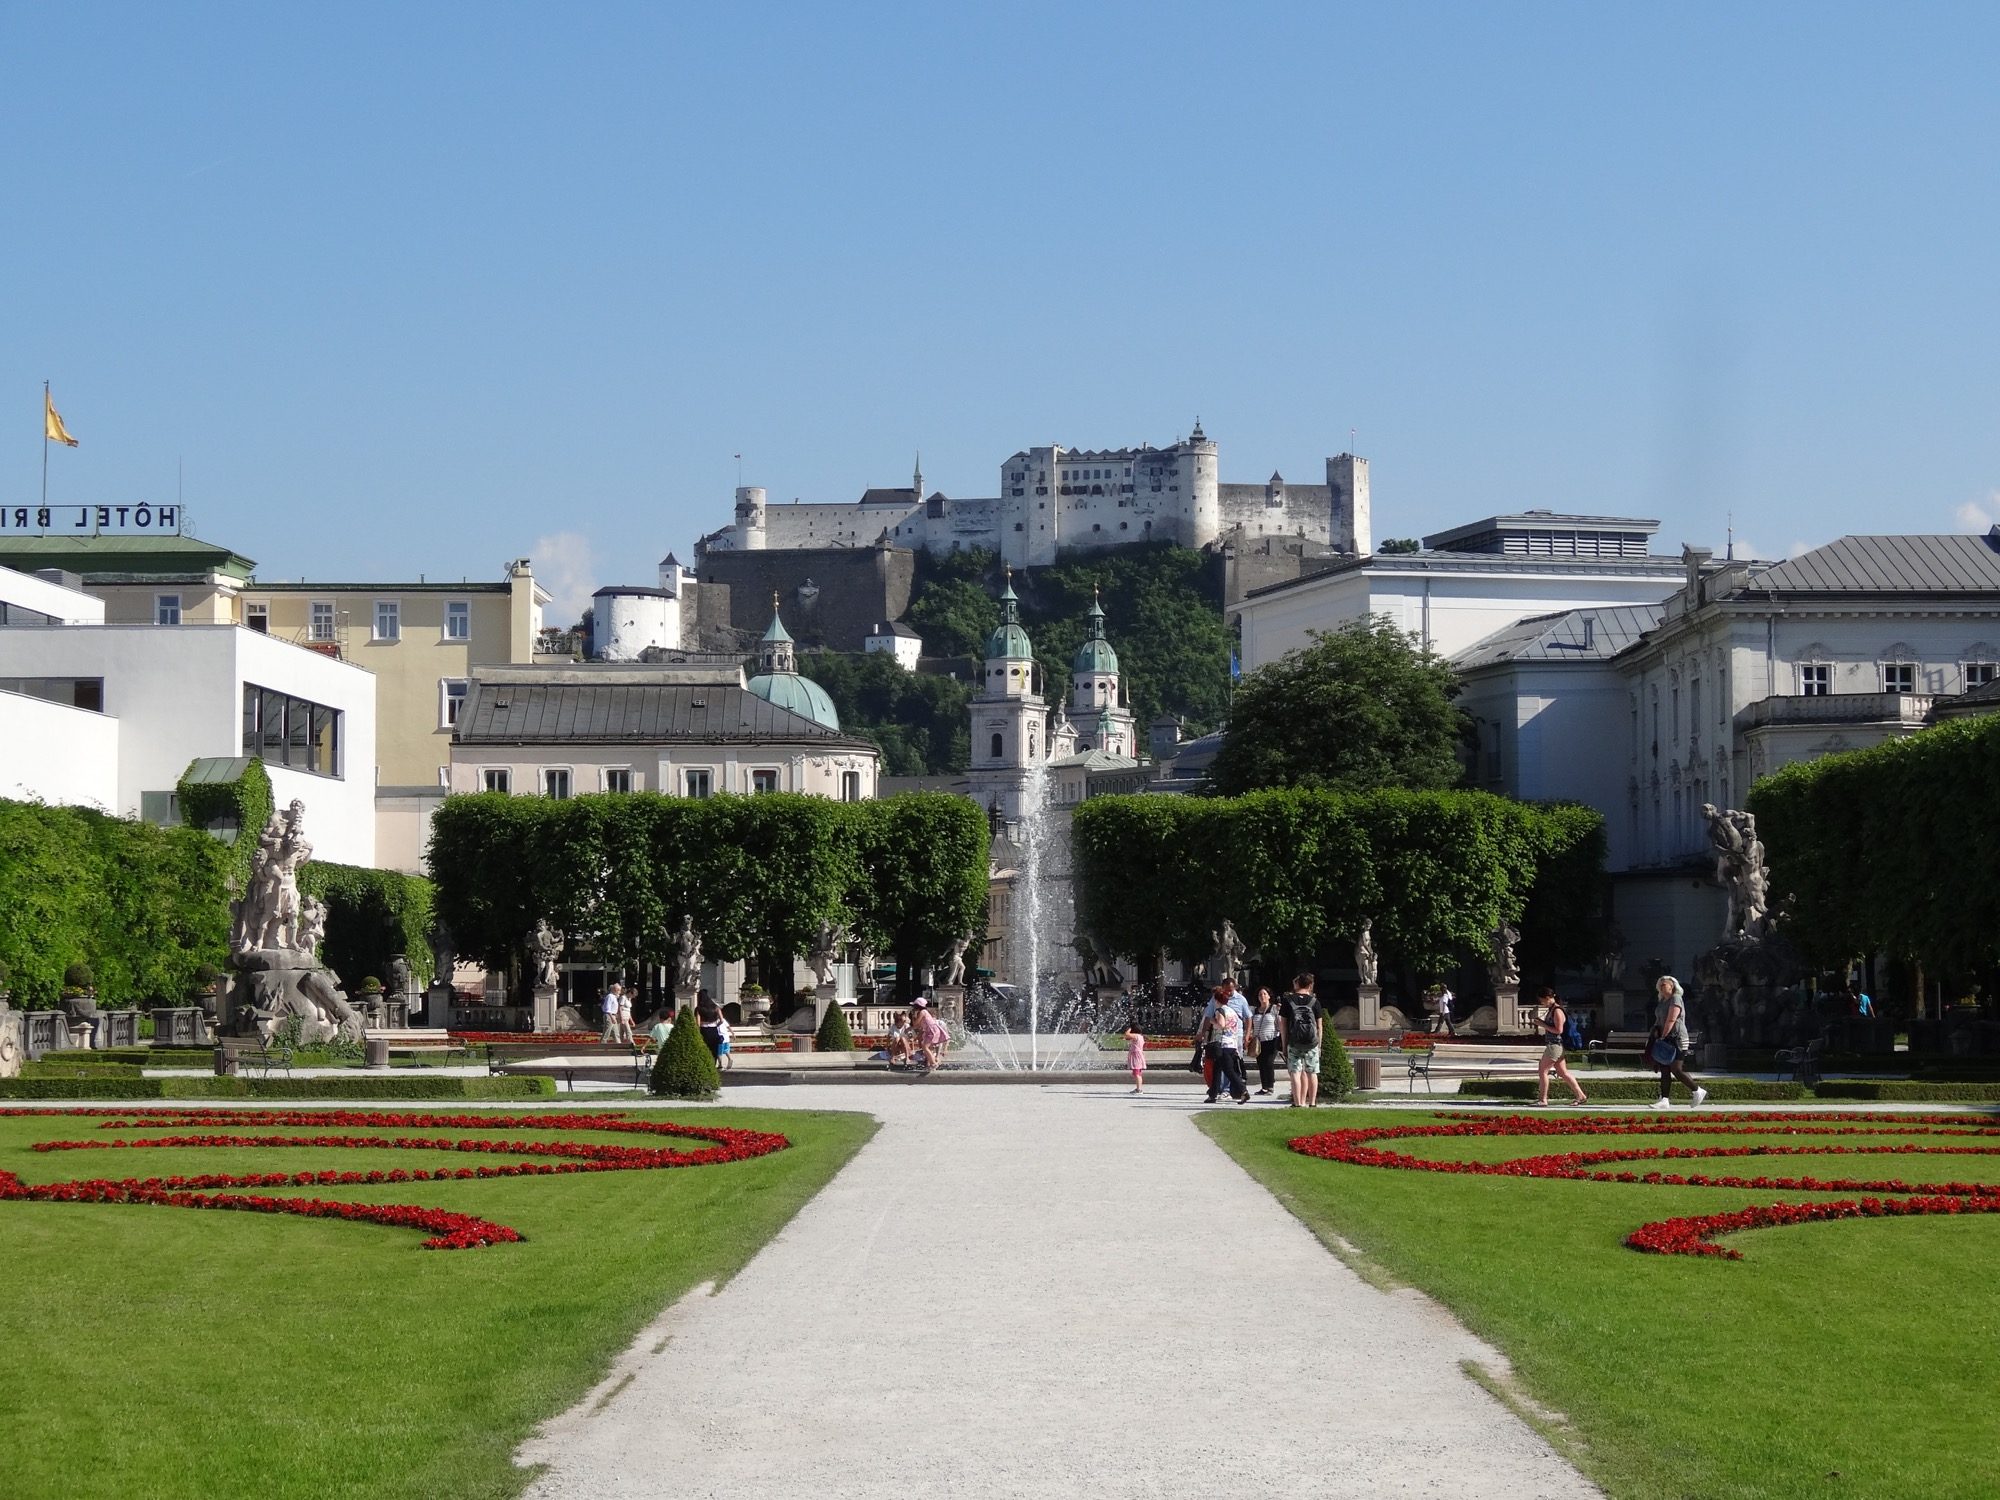 Salzburg - The sound of music...